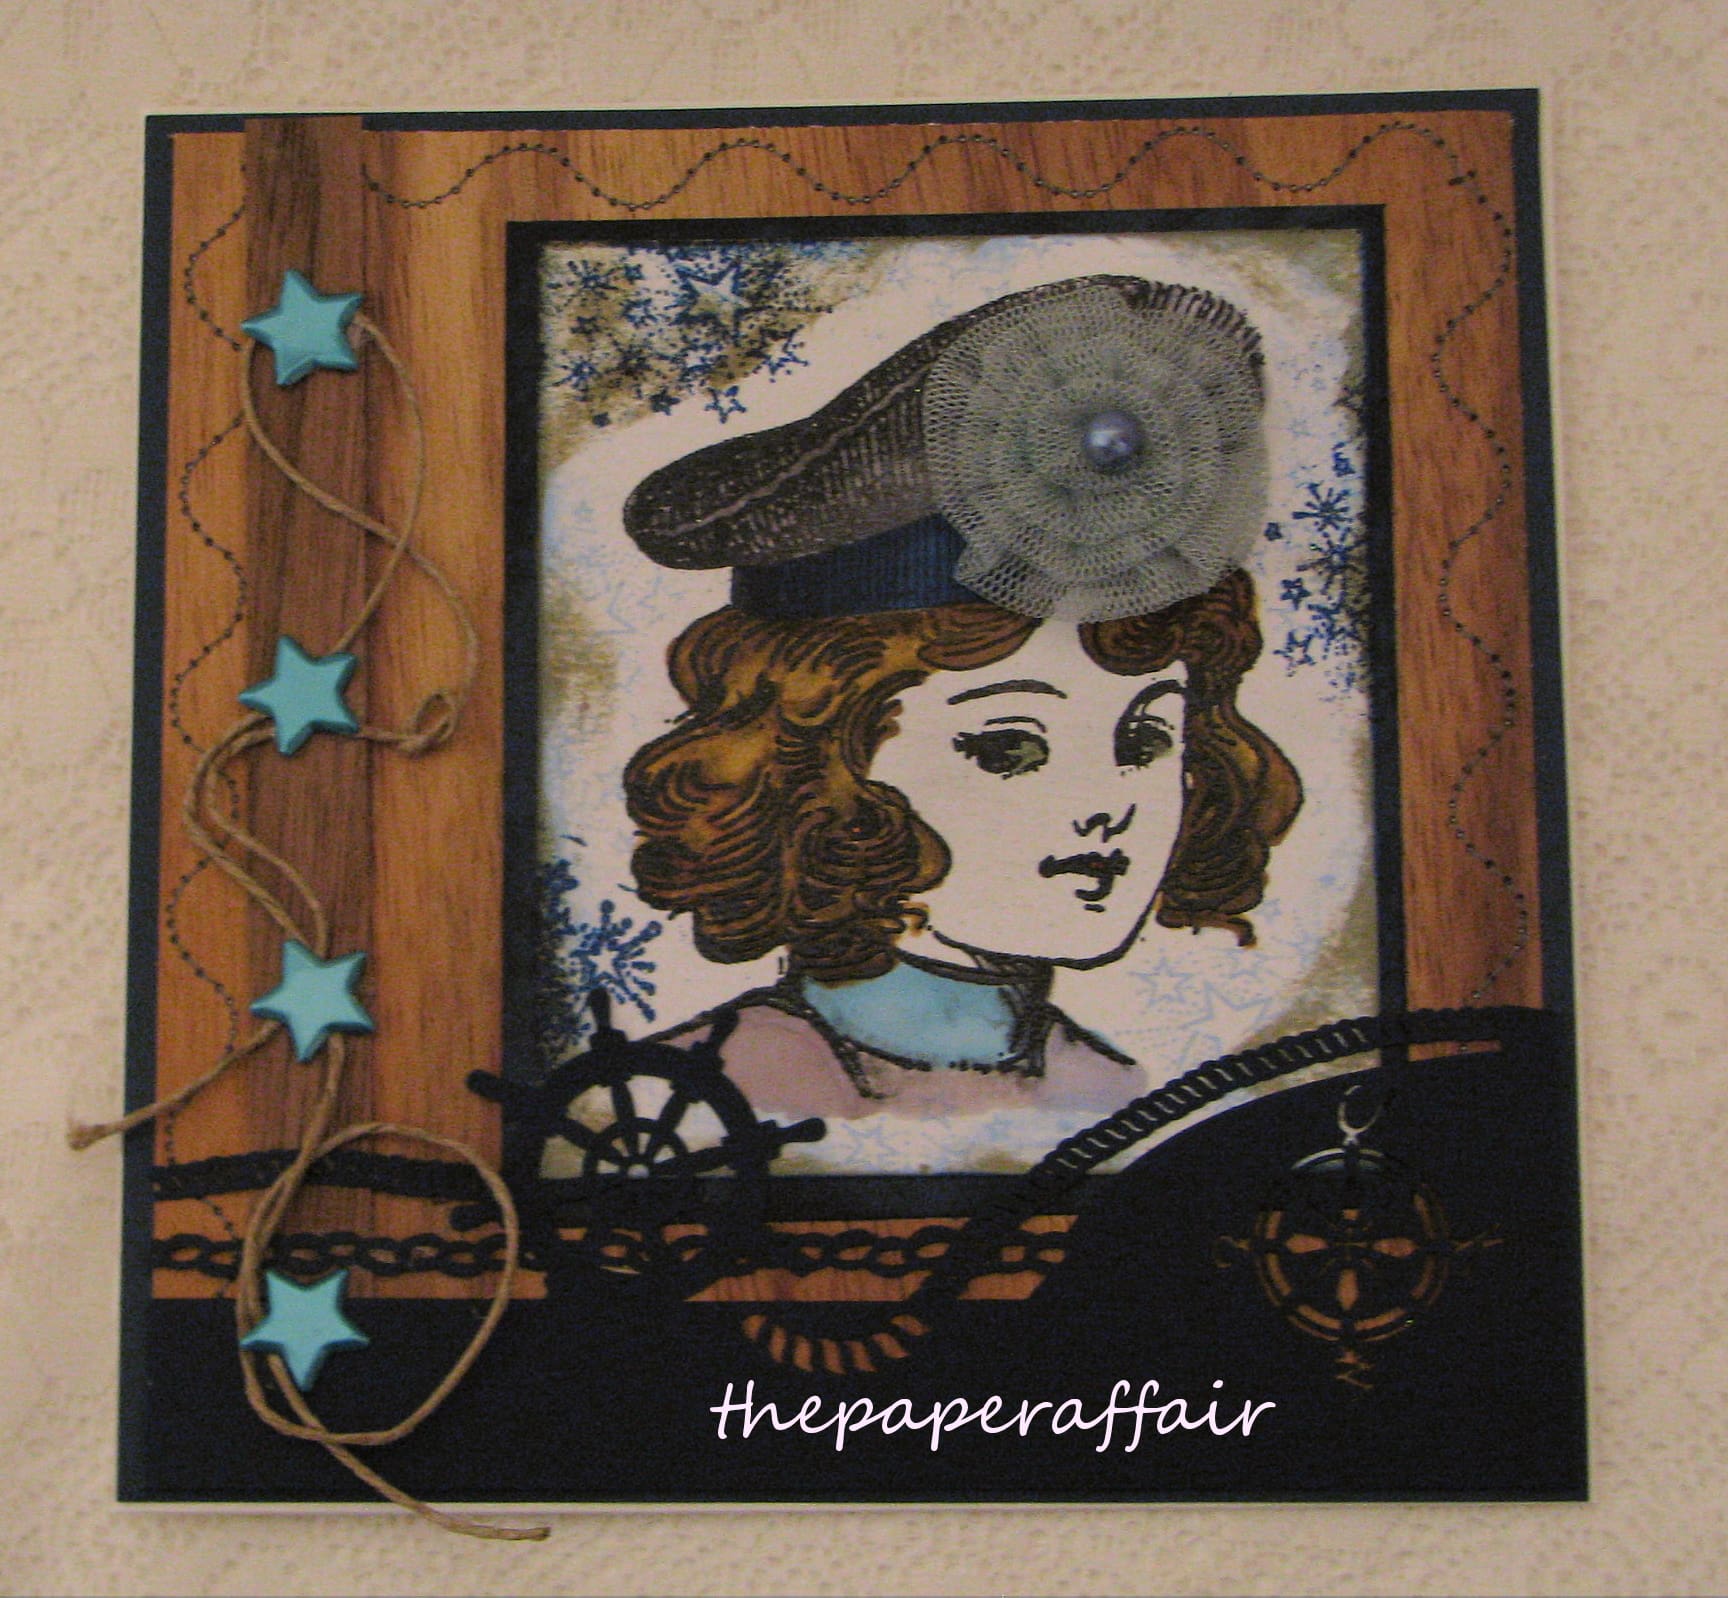 Sadies Floral Hat by Jane thepaperaffairblogspot